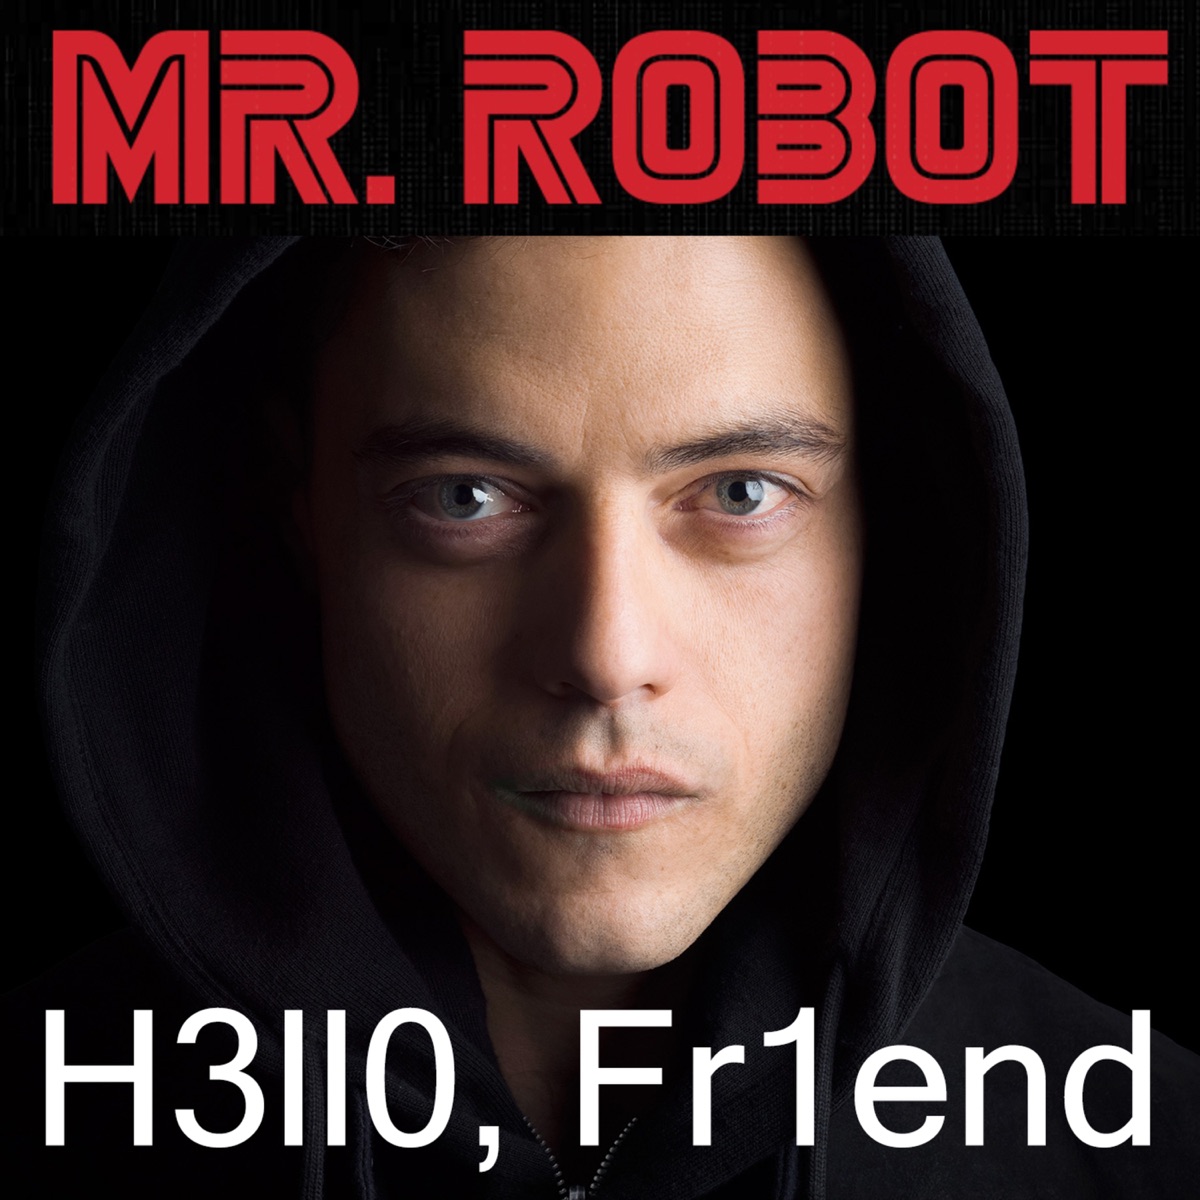 Mr. Robot  Season 4, Episode 3 Recap: 403 Forbidden 